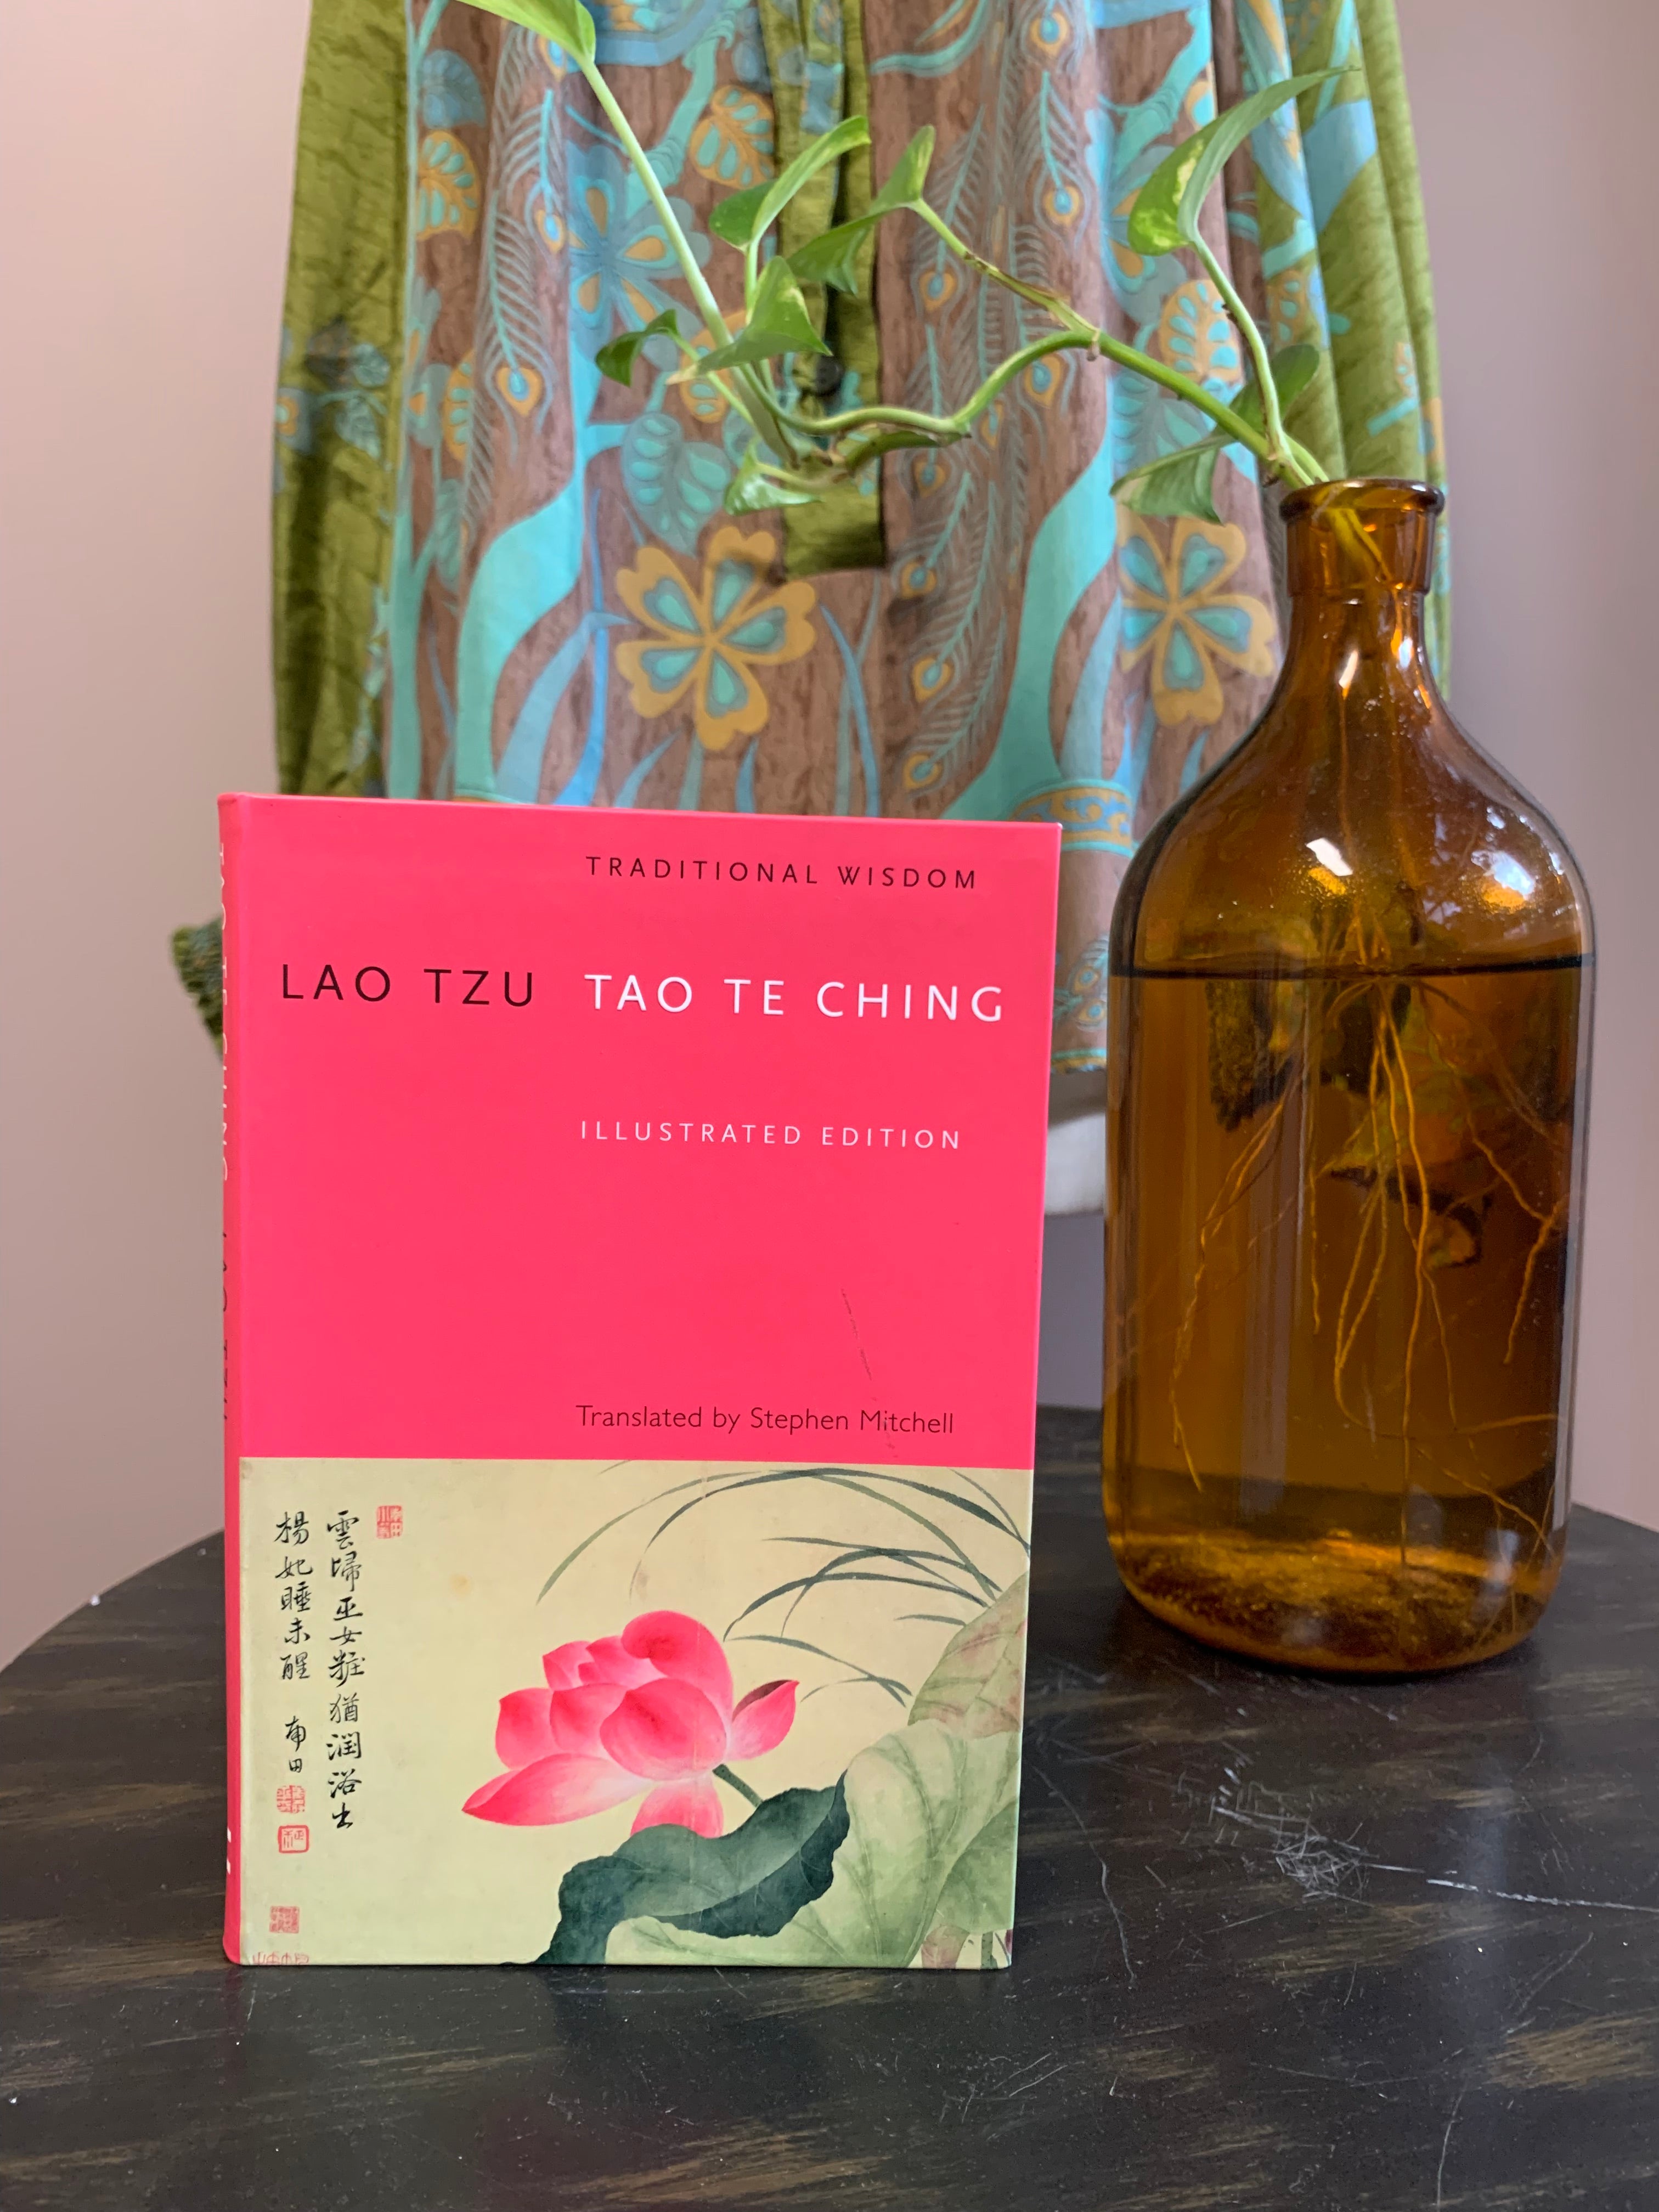 Books for spiritual guidance: The Tao of Motherhood / Tao Te Ching